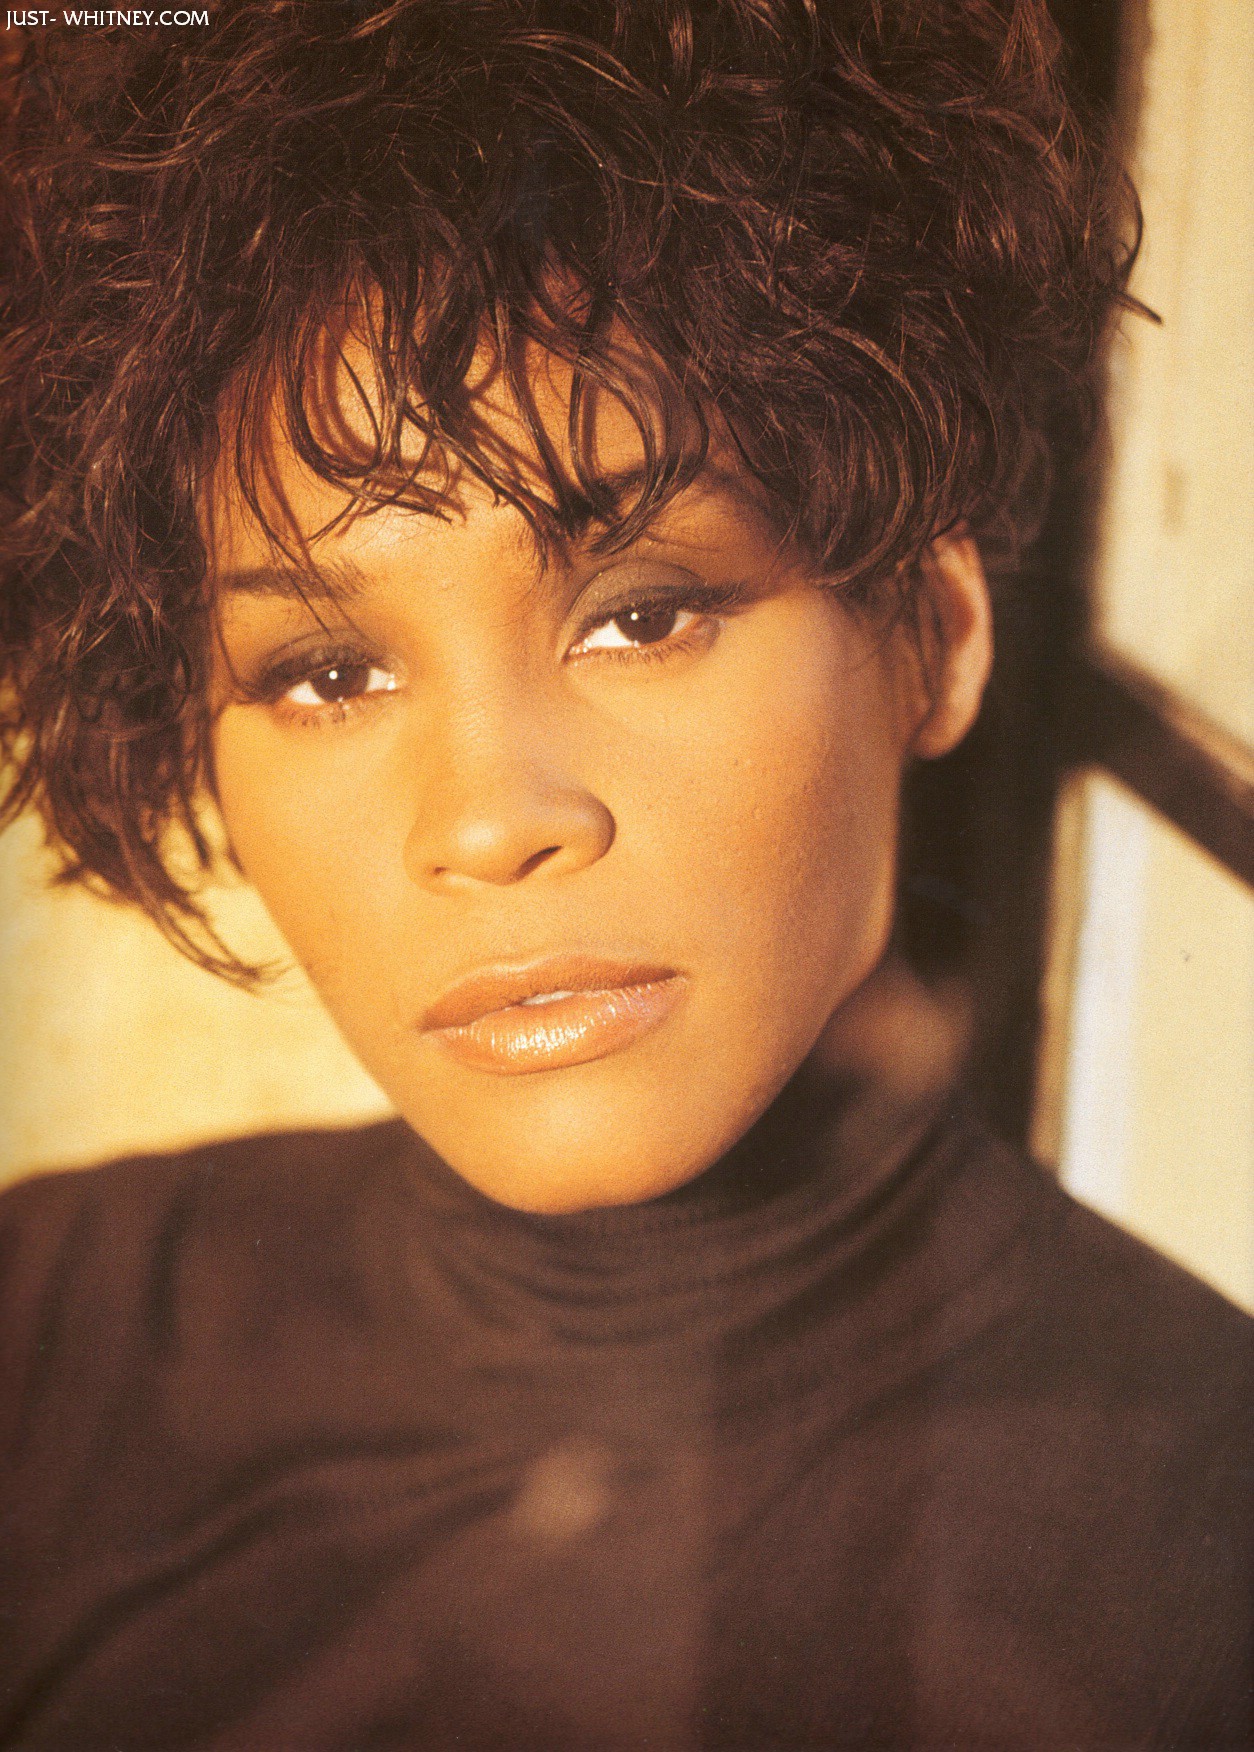 Whitney Houston photo 56 of 145 pics, wallpaper - photo #192267 - ThePlace2